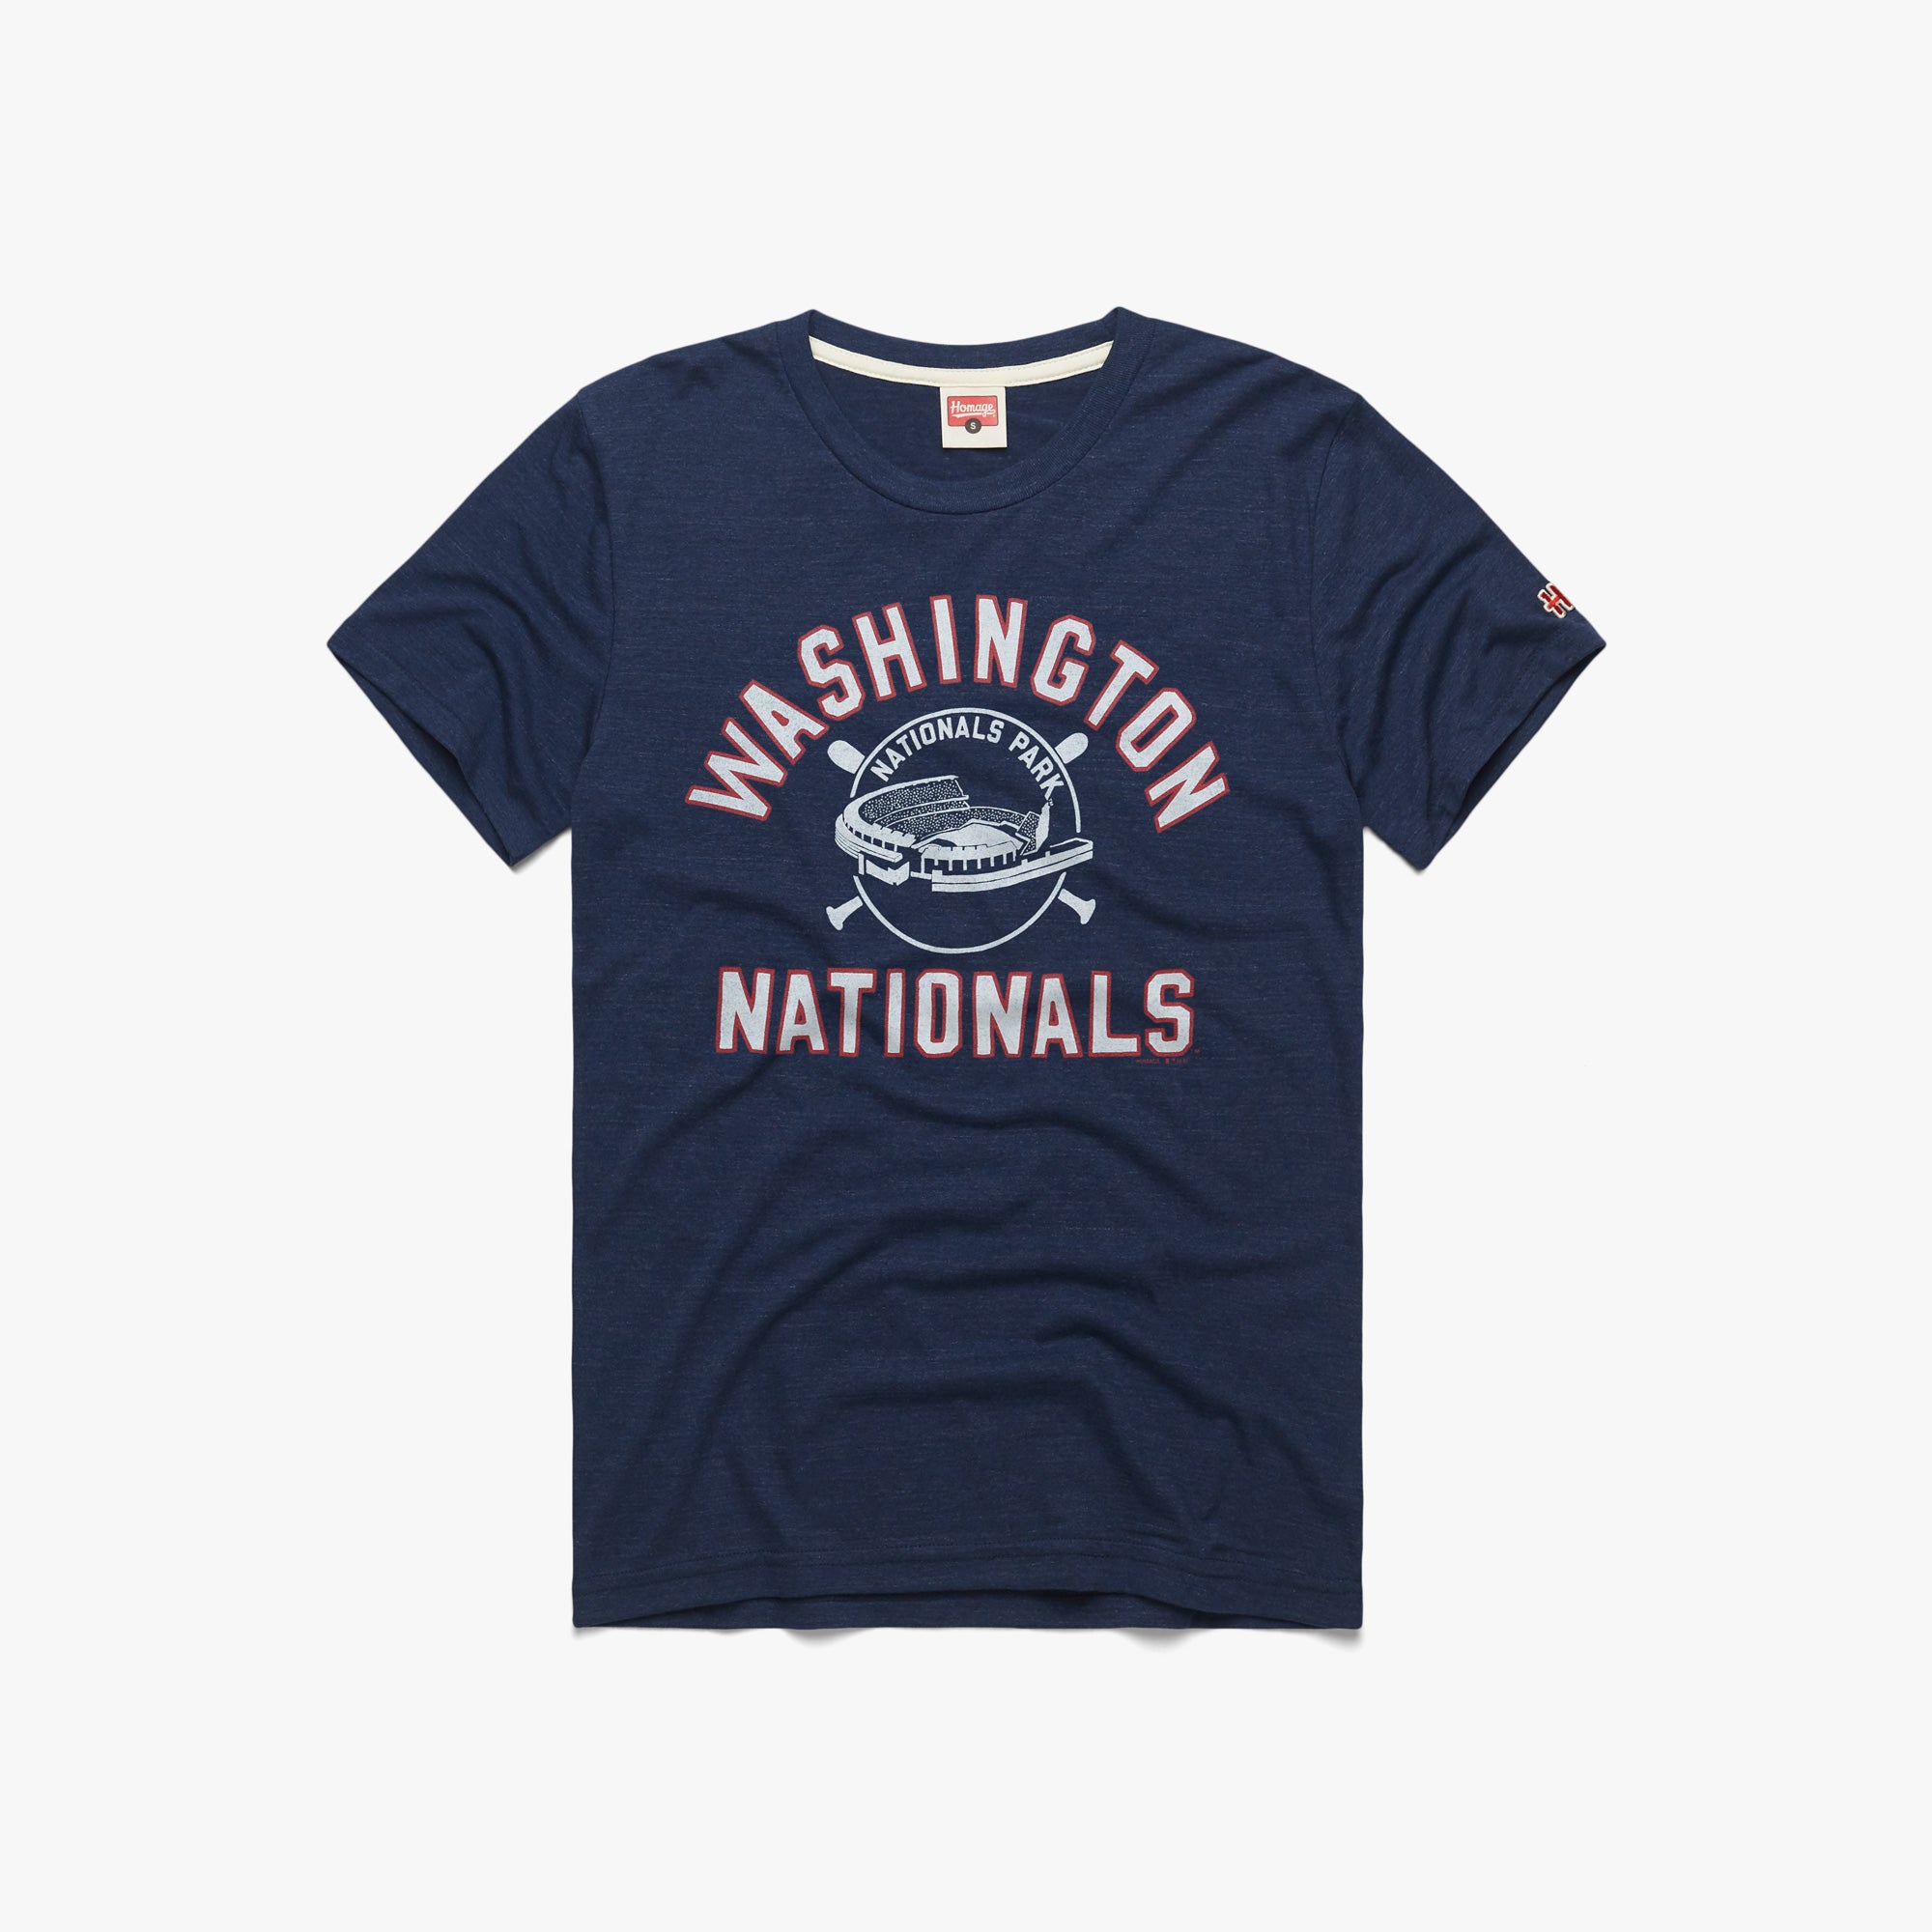 Nike | Washington Nationals World Series Long Sleeve Tshirt | Size: Medium